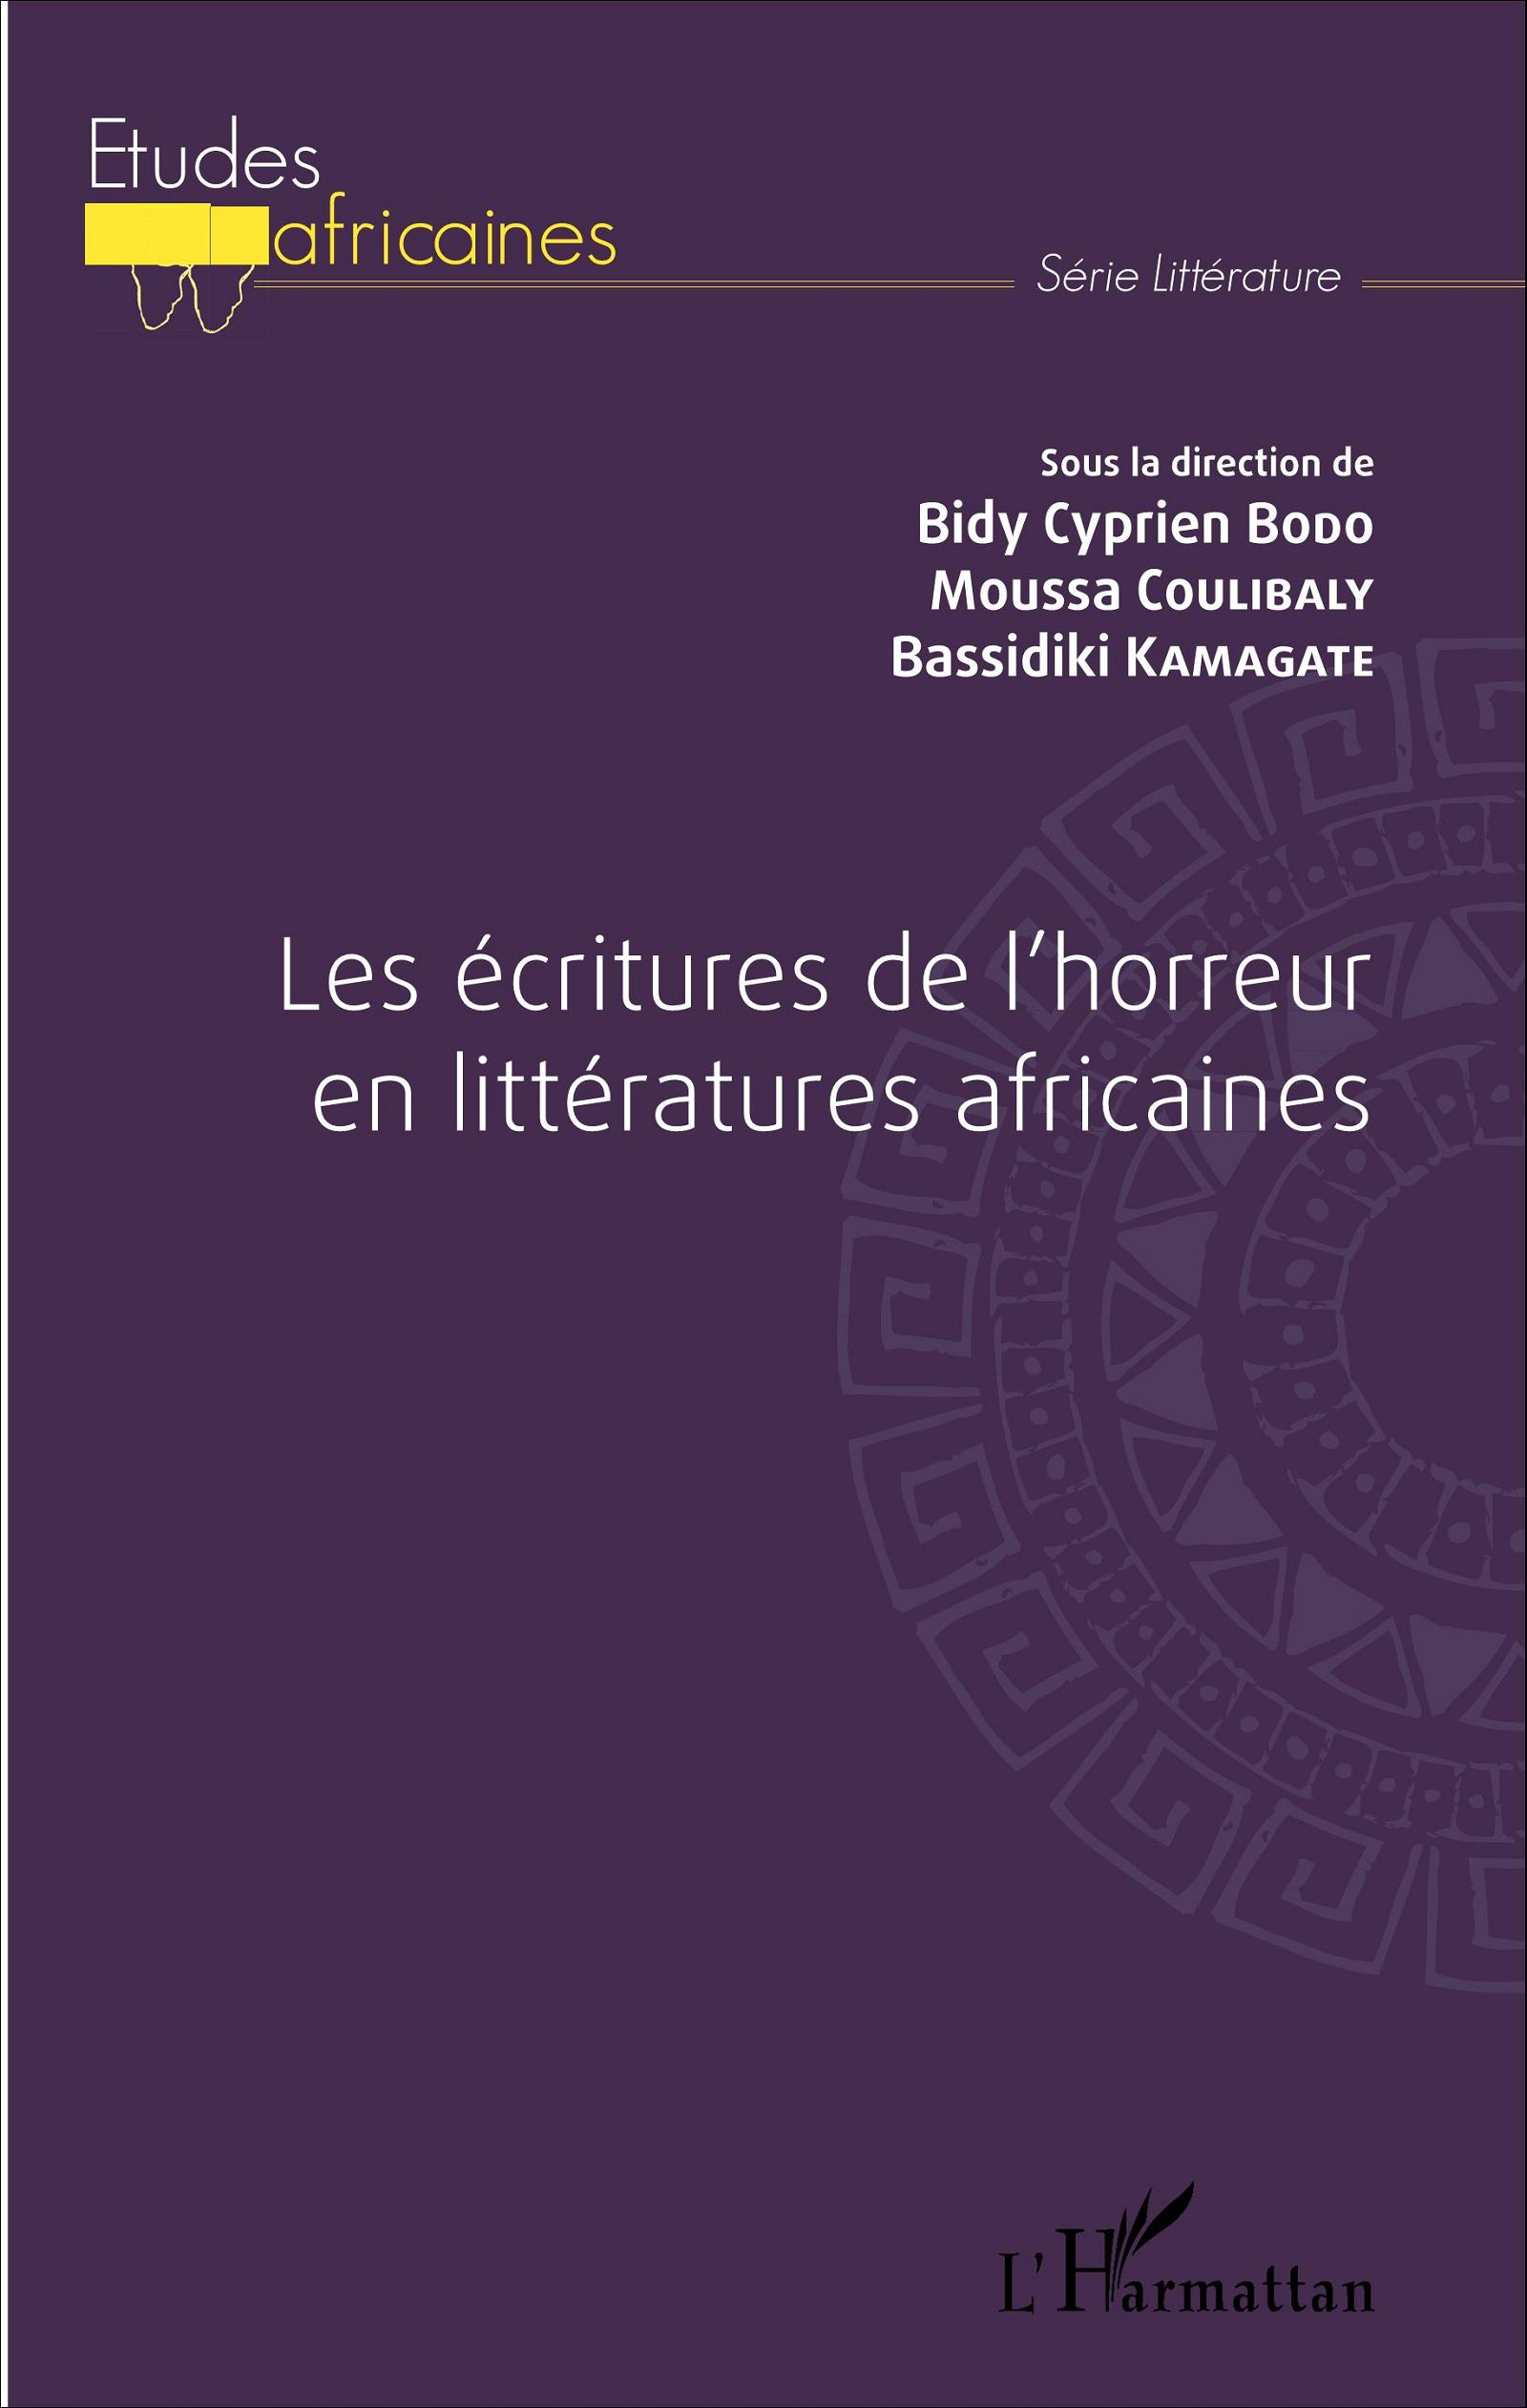 B. C. Bodo, M. Coulibaly et B. Kamagaté (dir.), Les Ecritures de l'horreur dans la littérature africaine